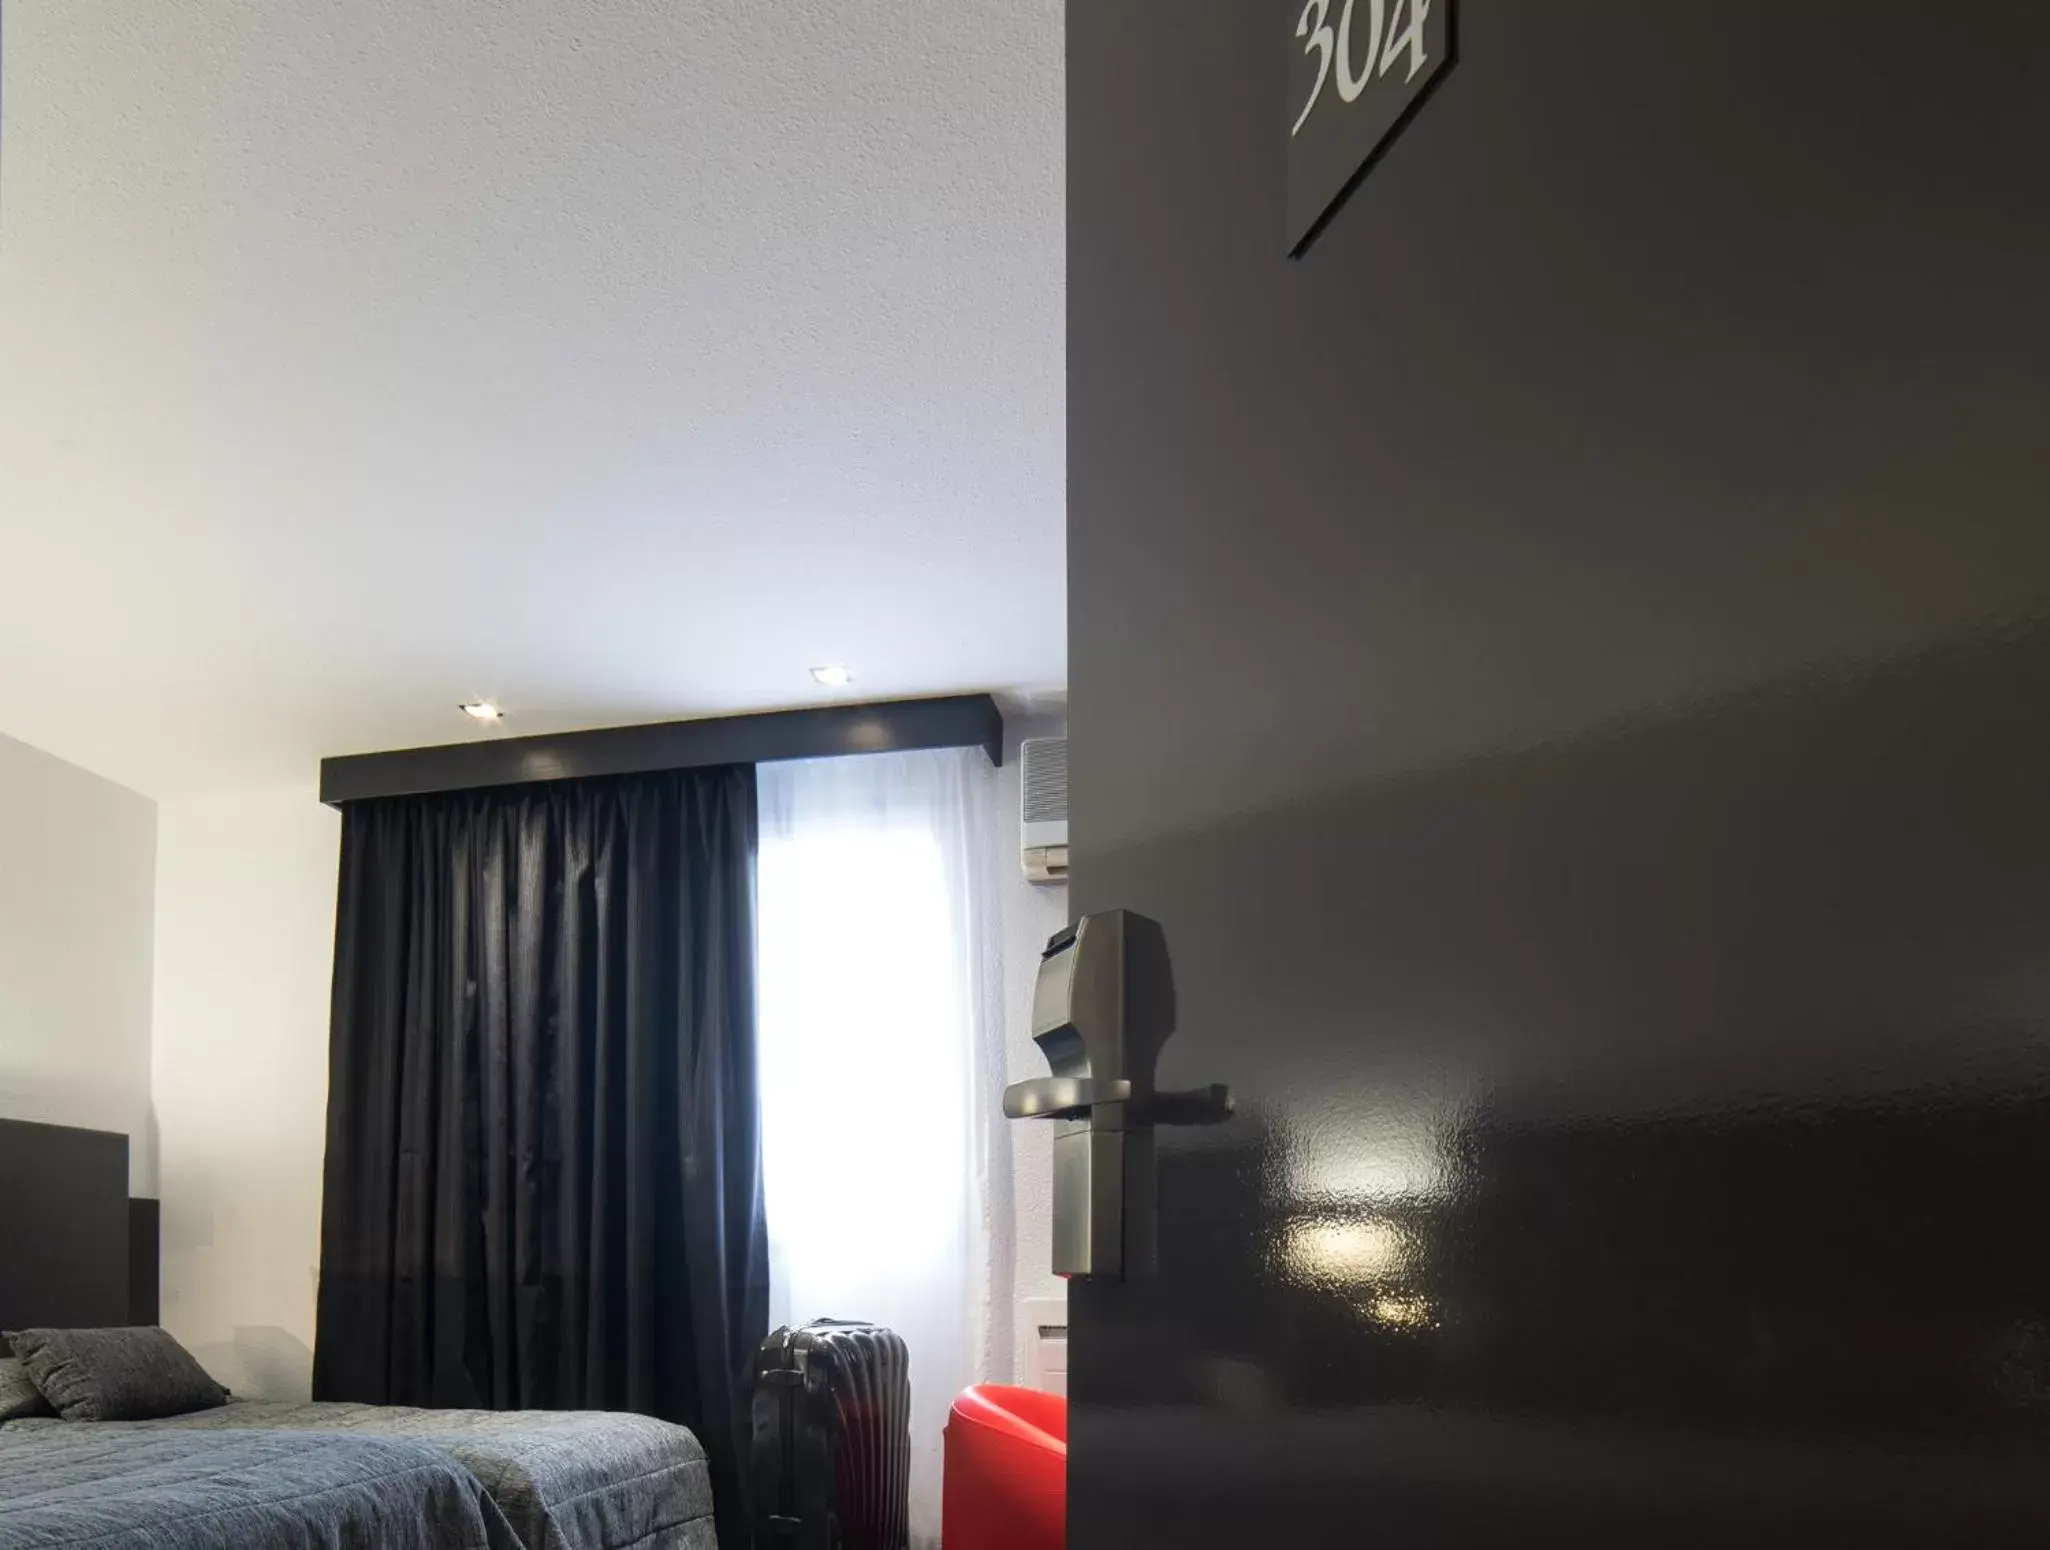 Bedroom in Cit'Hotel Stim'Otel